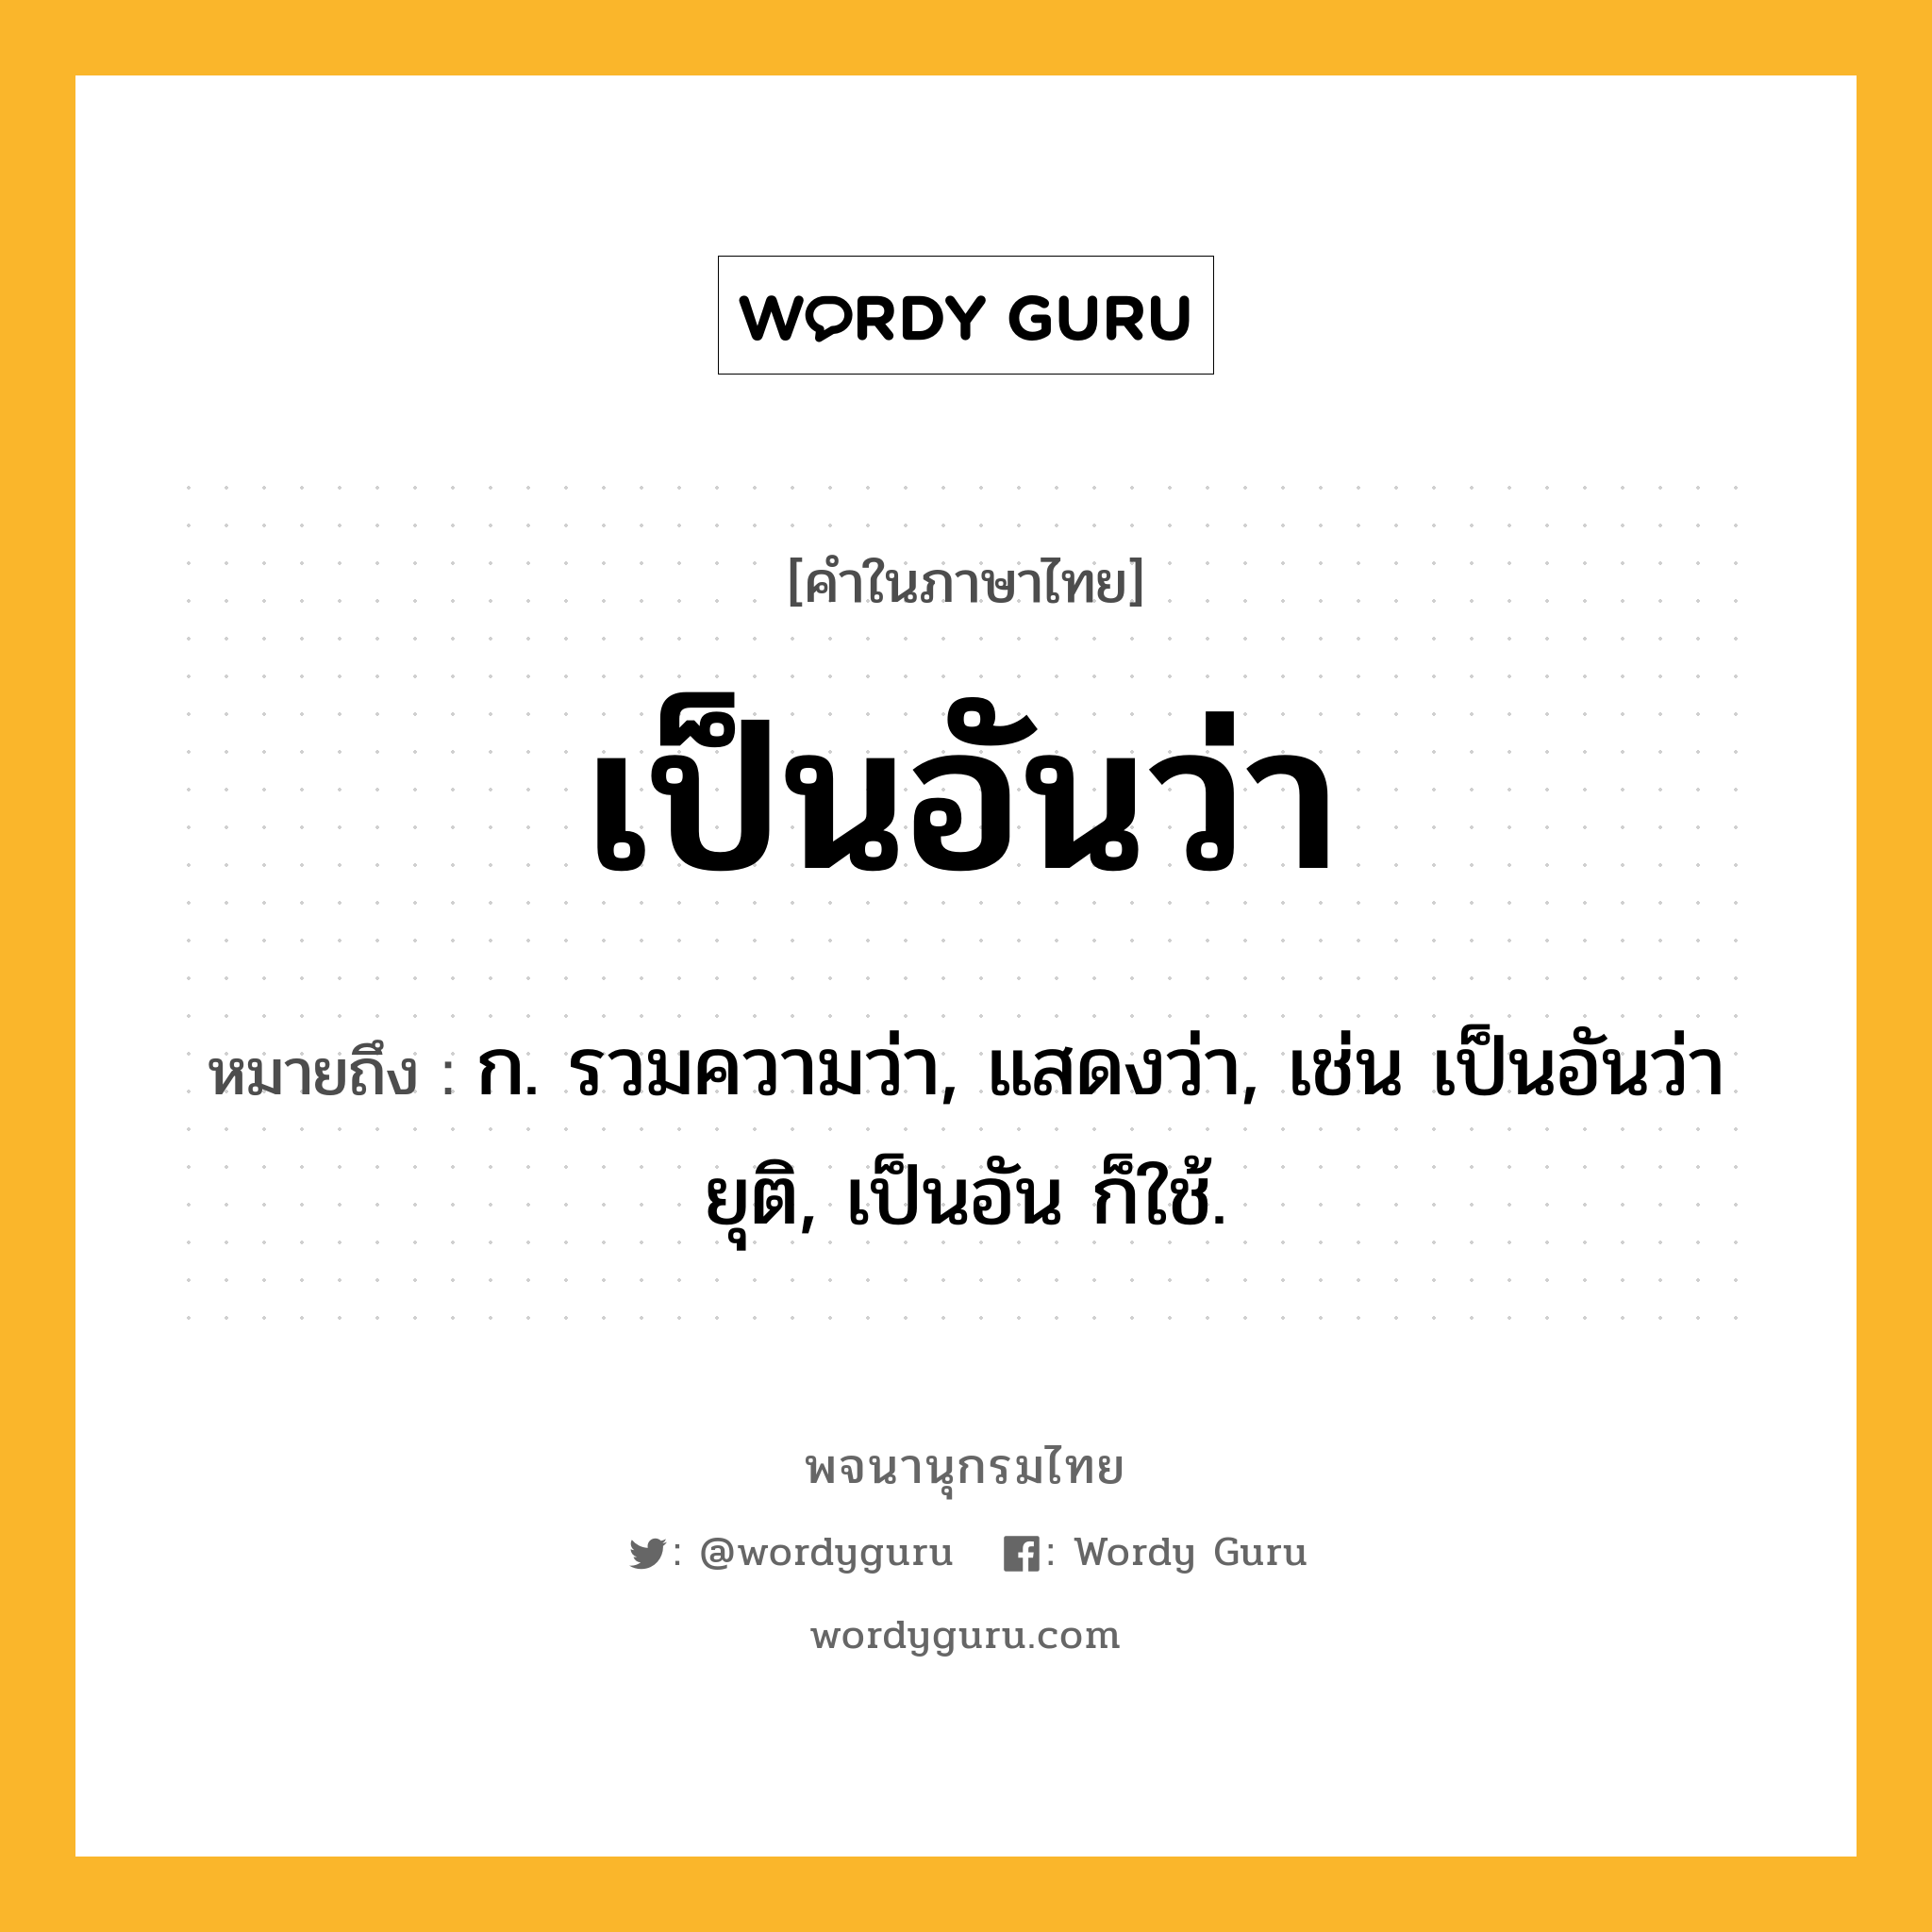 เป็นอันว่า ความหมาย หมายถึงอะไร?, คำในภาษาไทย เป็นอันว่า หมายถึง ก. รวมความว่า, แสดงว่า, เช่น เป็นอันว่ายุติ, เป็นอัน ก็ใช้.